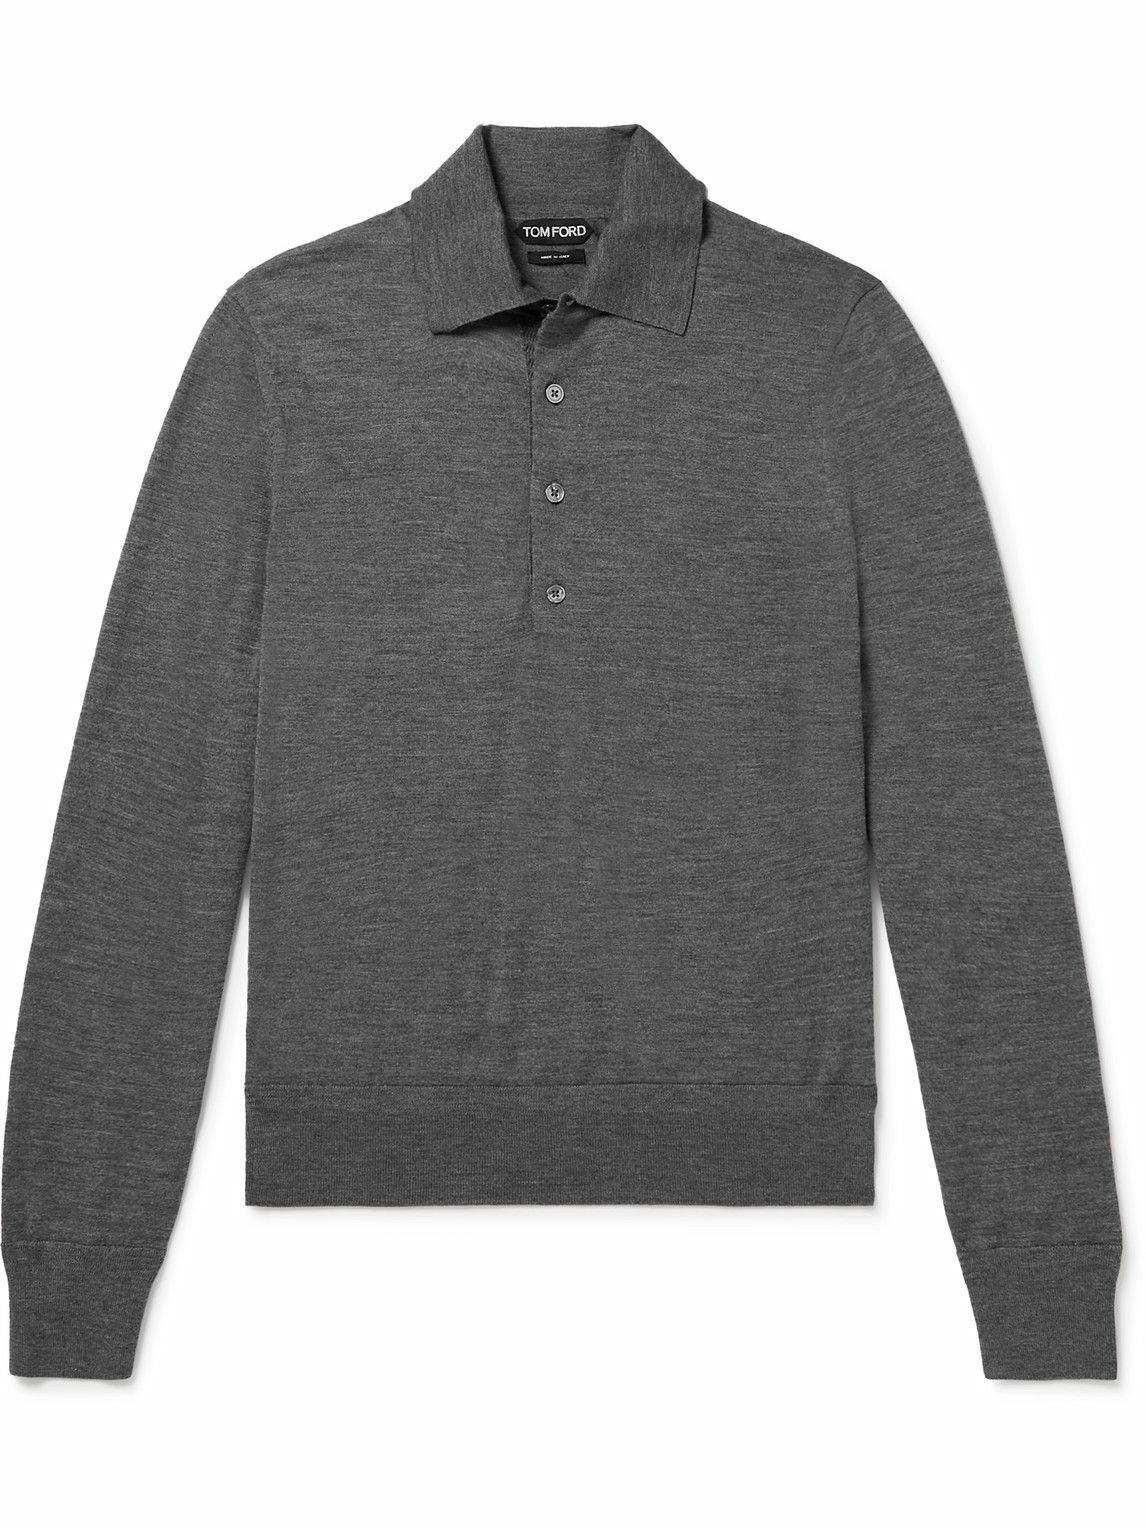 TOM FORD - Wool Polo Shirt - Gray TOM FORD